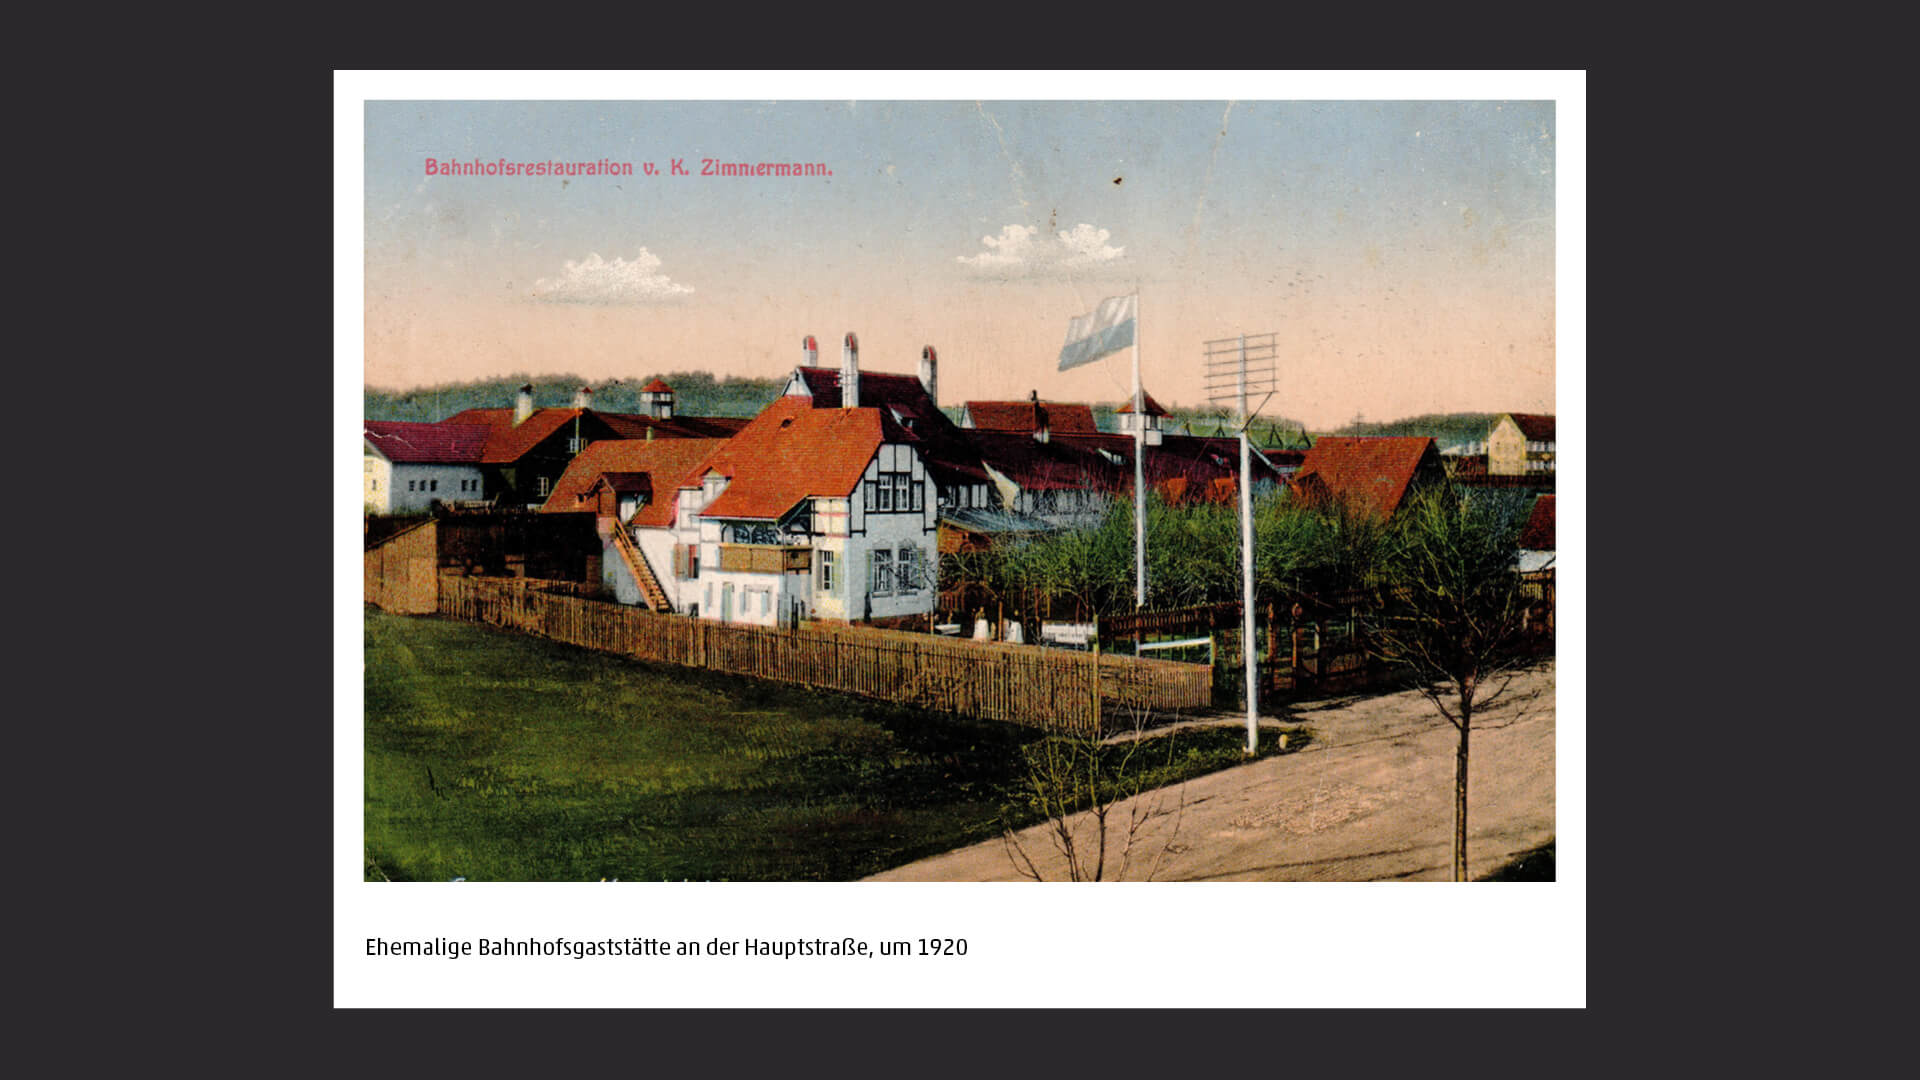 Ehemalige Bahnhofsgaststätte an der Hauptstraße, Heroldsberg, um 1920